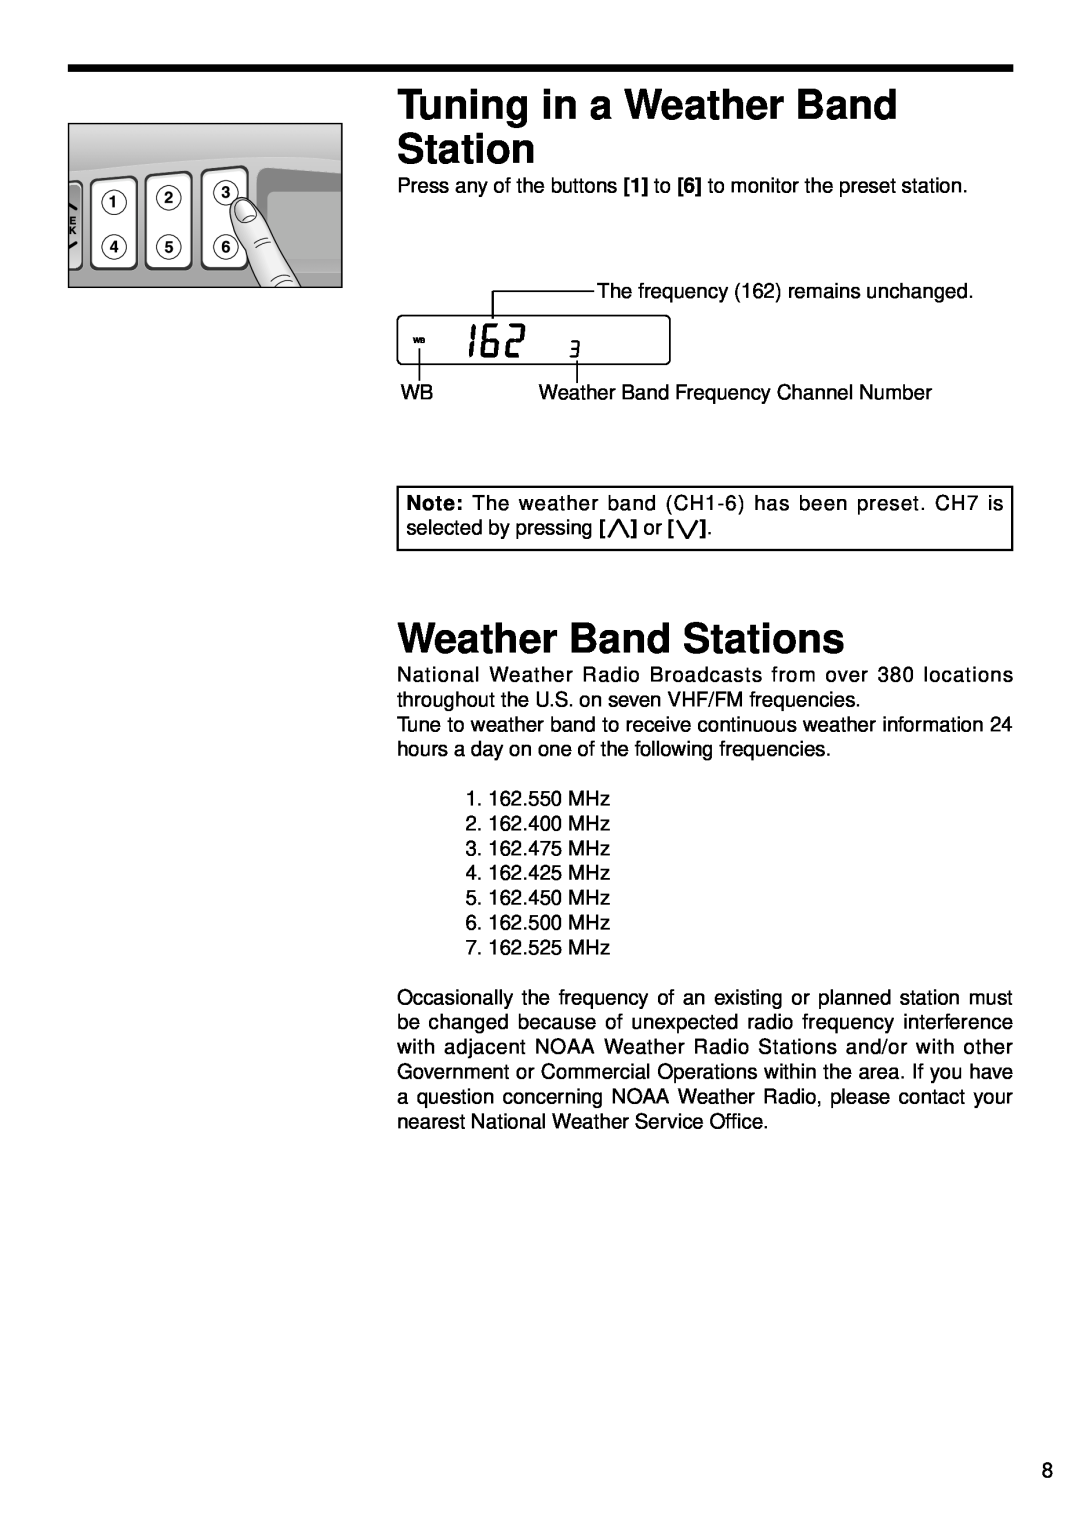 Panasonic CR-W400U operating instructions Tuning in a Weather Band Station, Weather Band Stations 